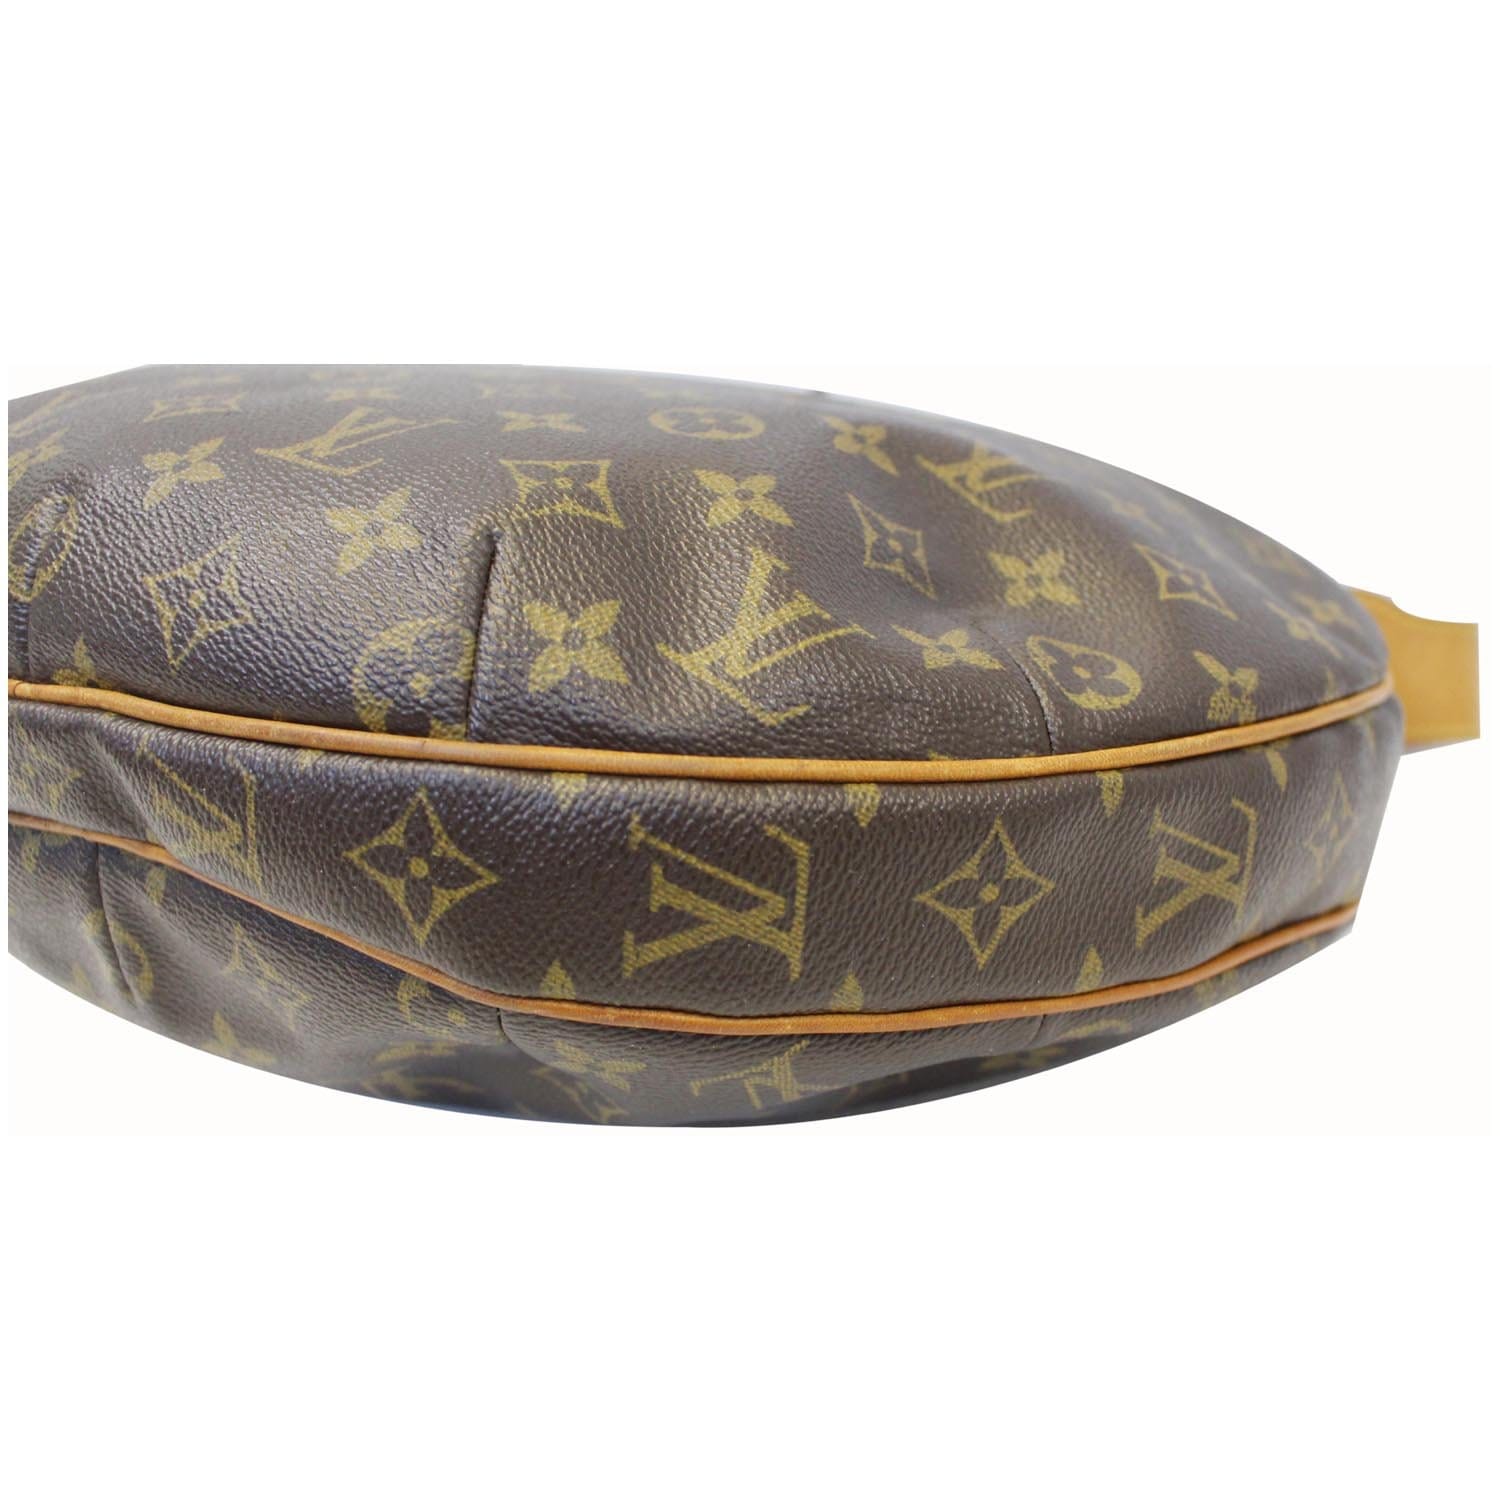 The Louis Vuitton Croissant bag: Contemporary charm.